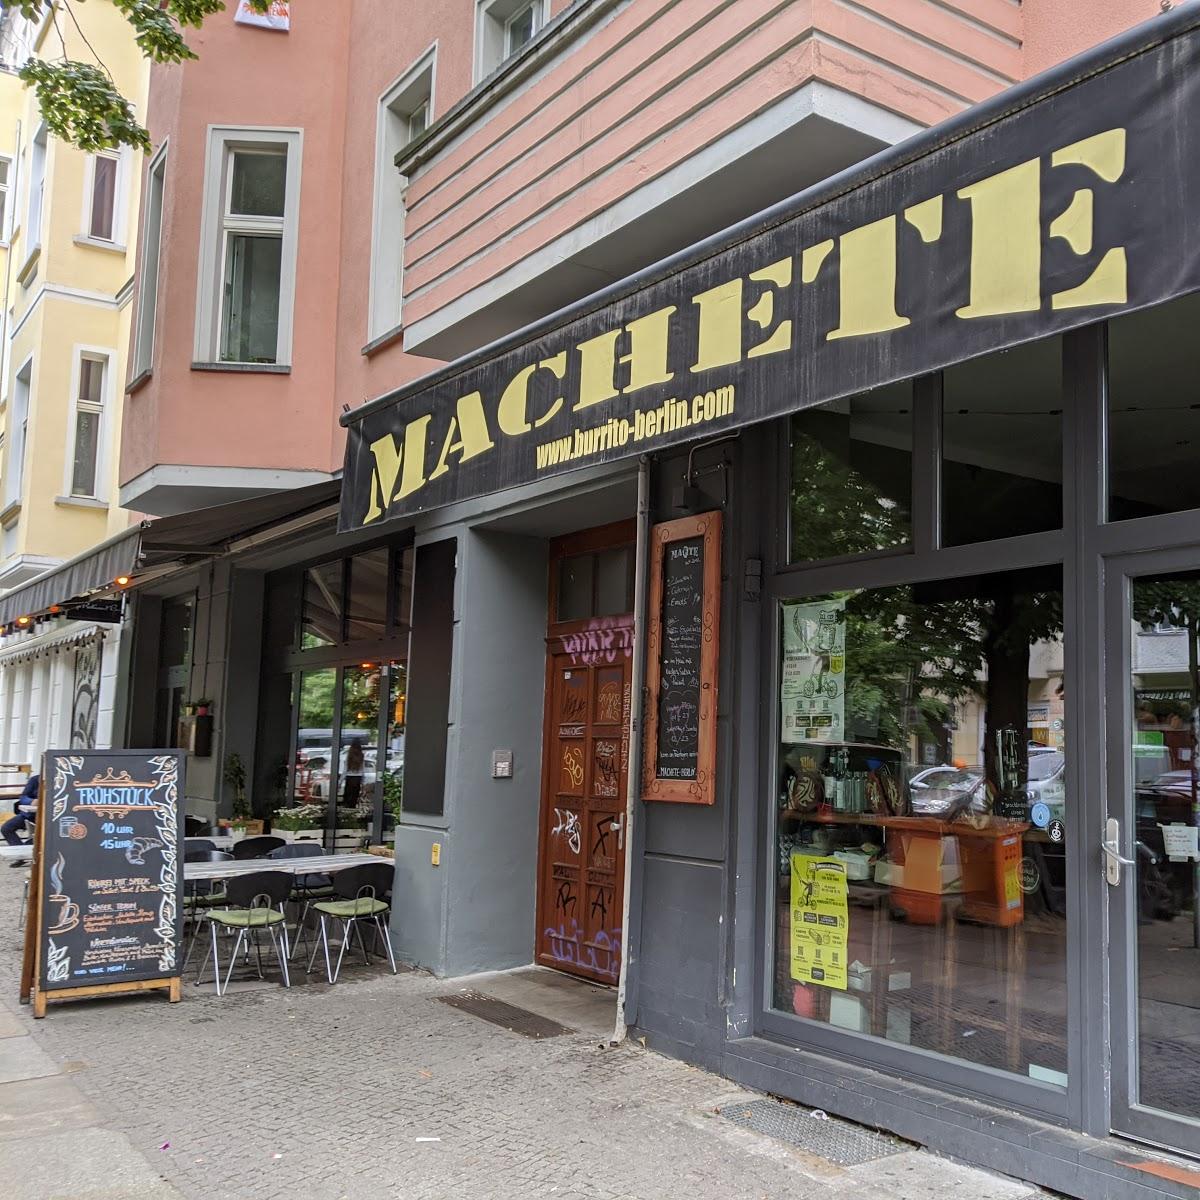 Restaurant "MACHETE Berlin" in Berlin